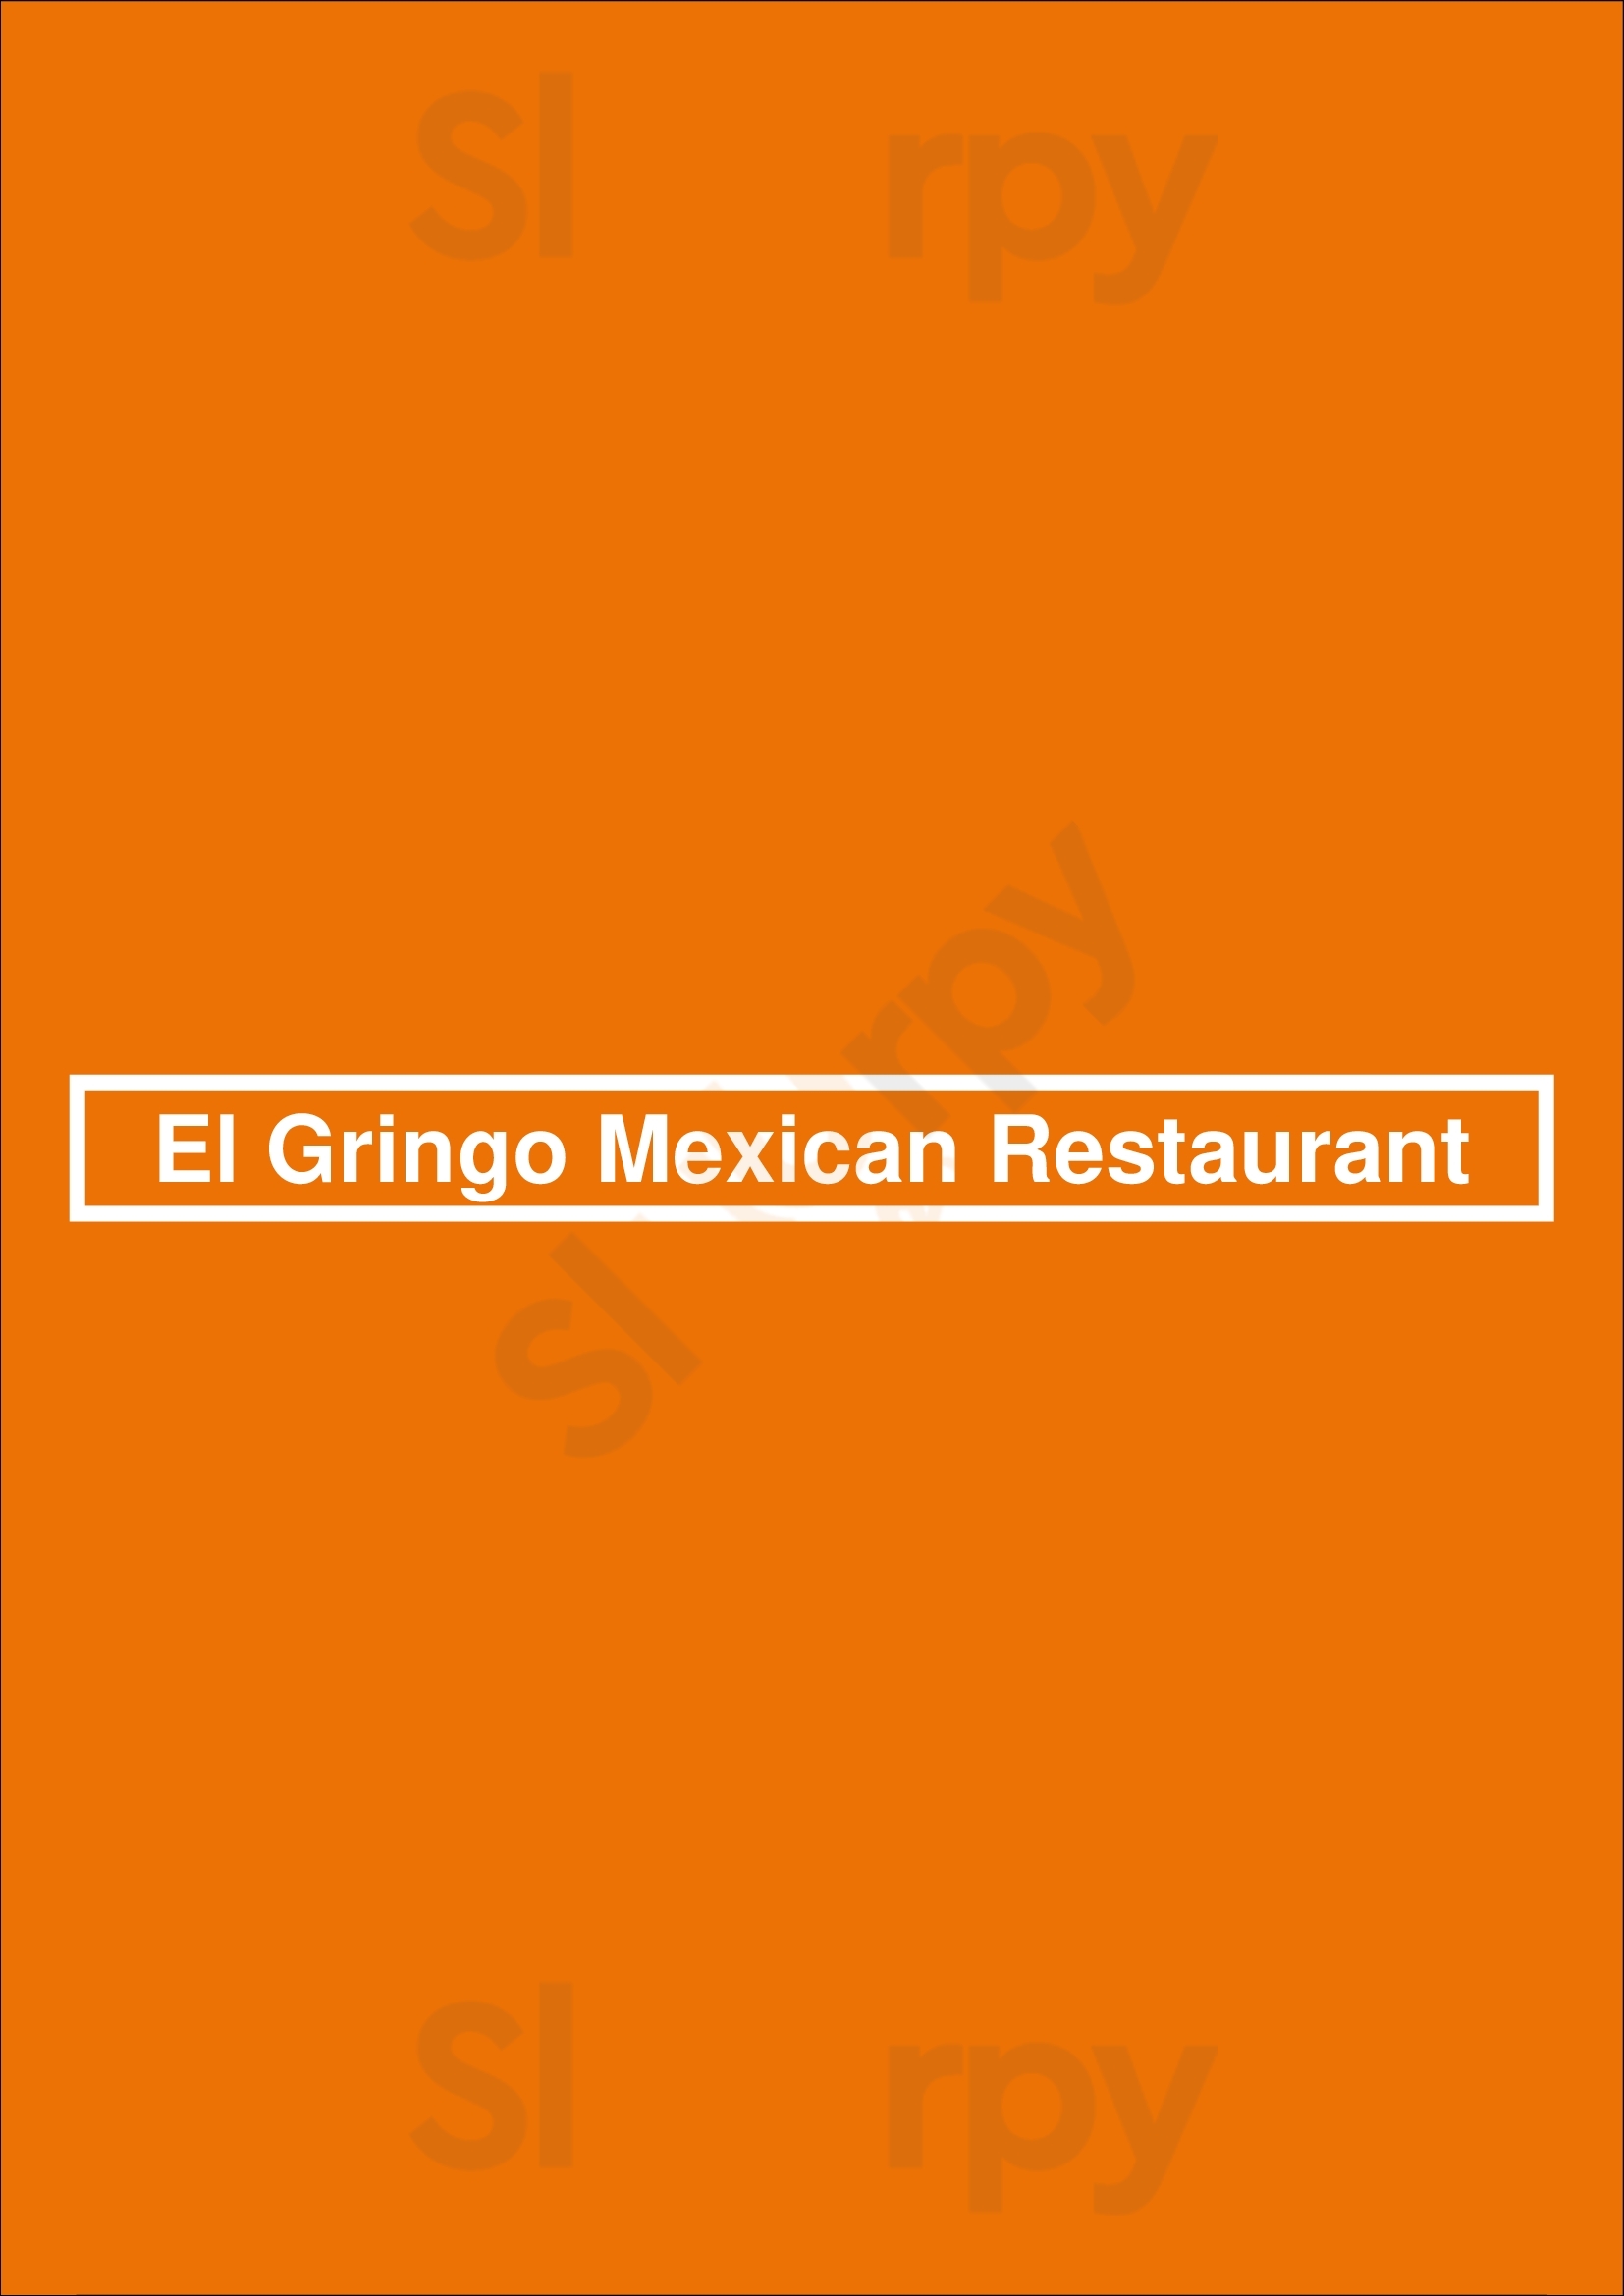 El Gringo Mexican Restaurant Hermosa Beach Menu - 1